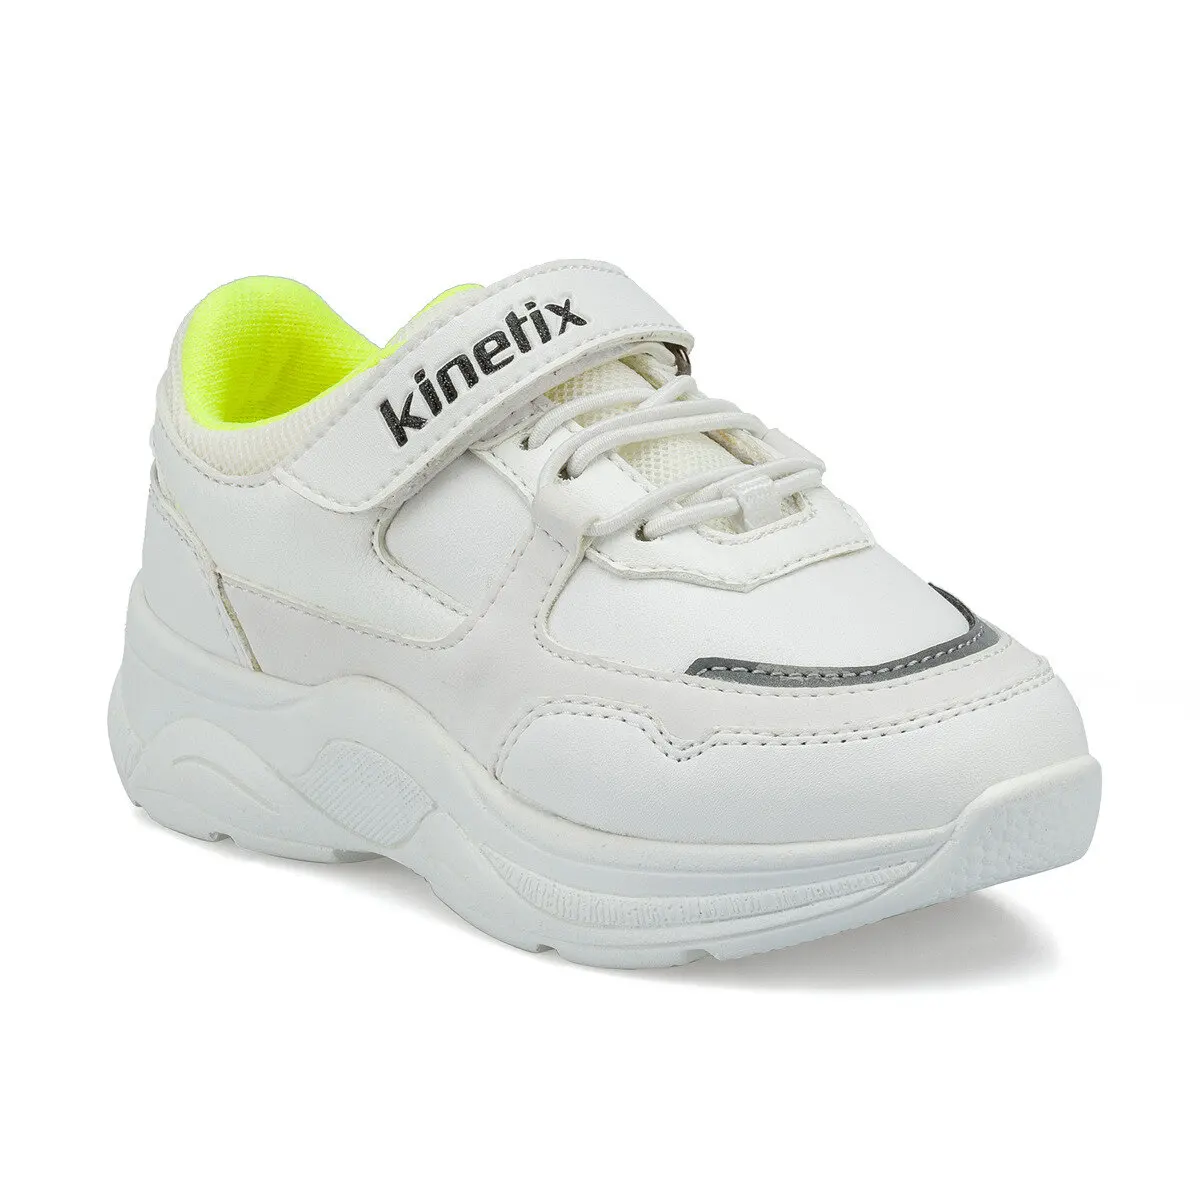 FLO SANITA J White Male Child Sports Shoes KINETIX| | - AliExpress